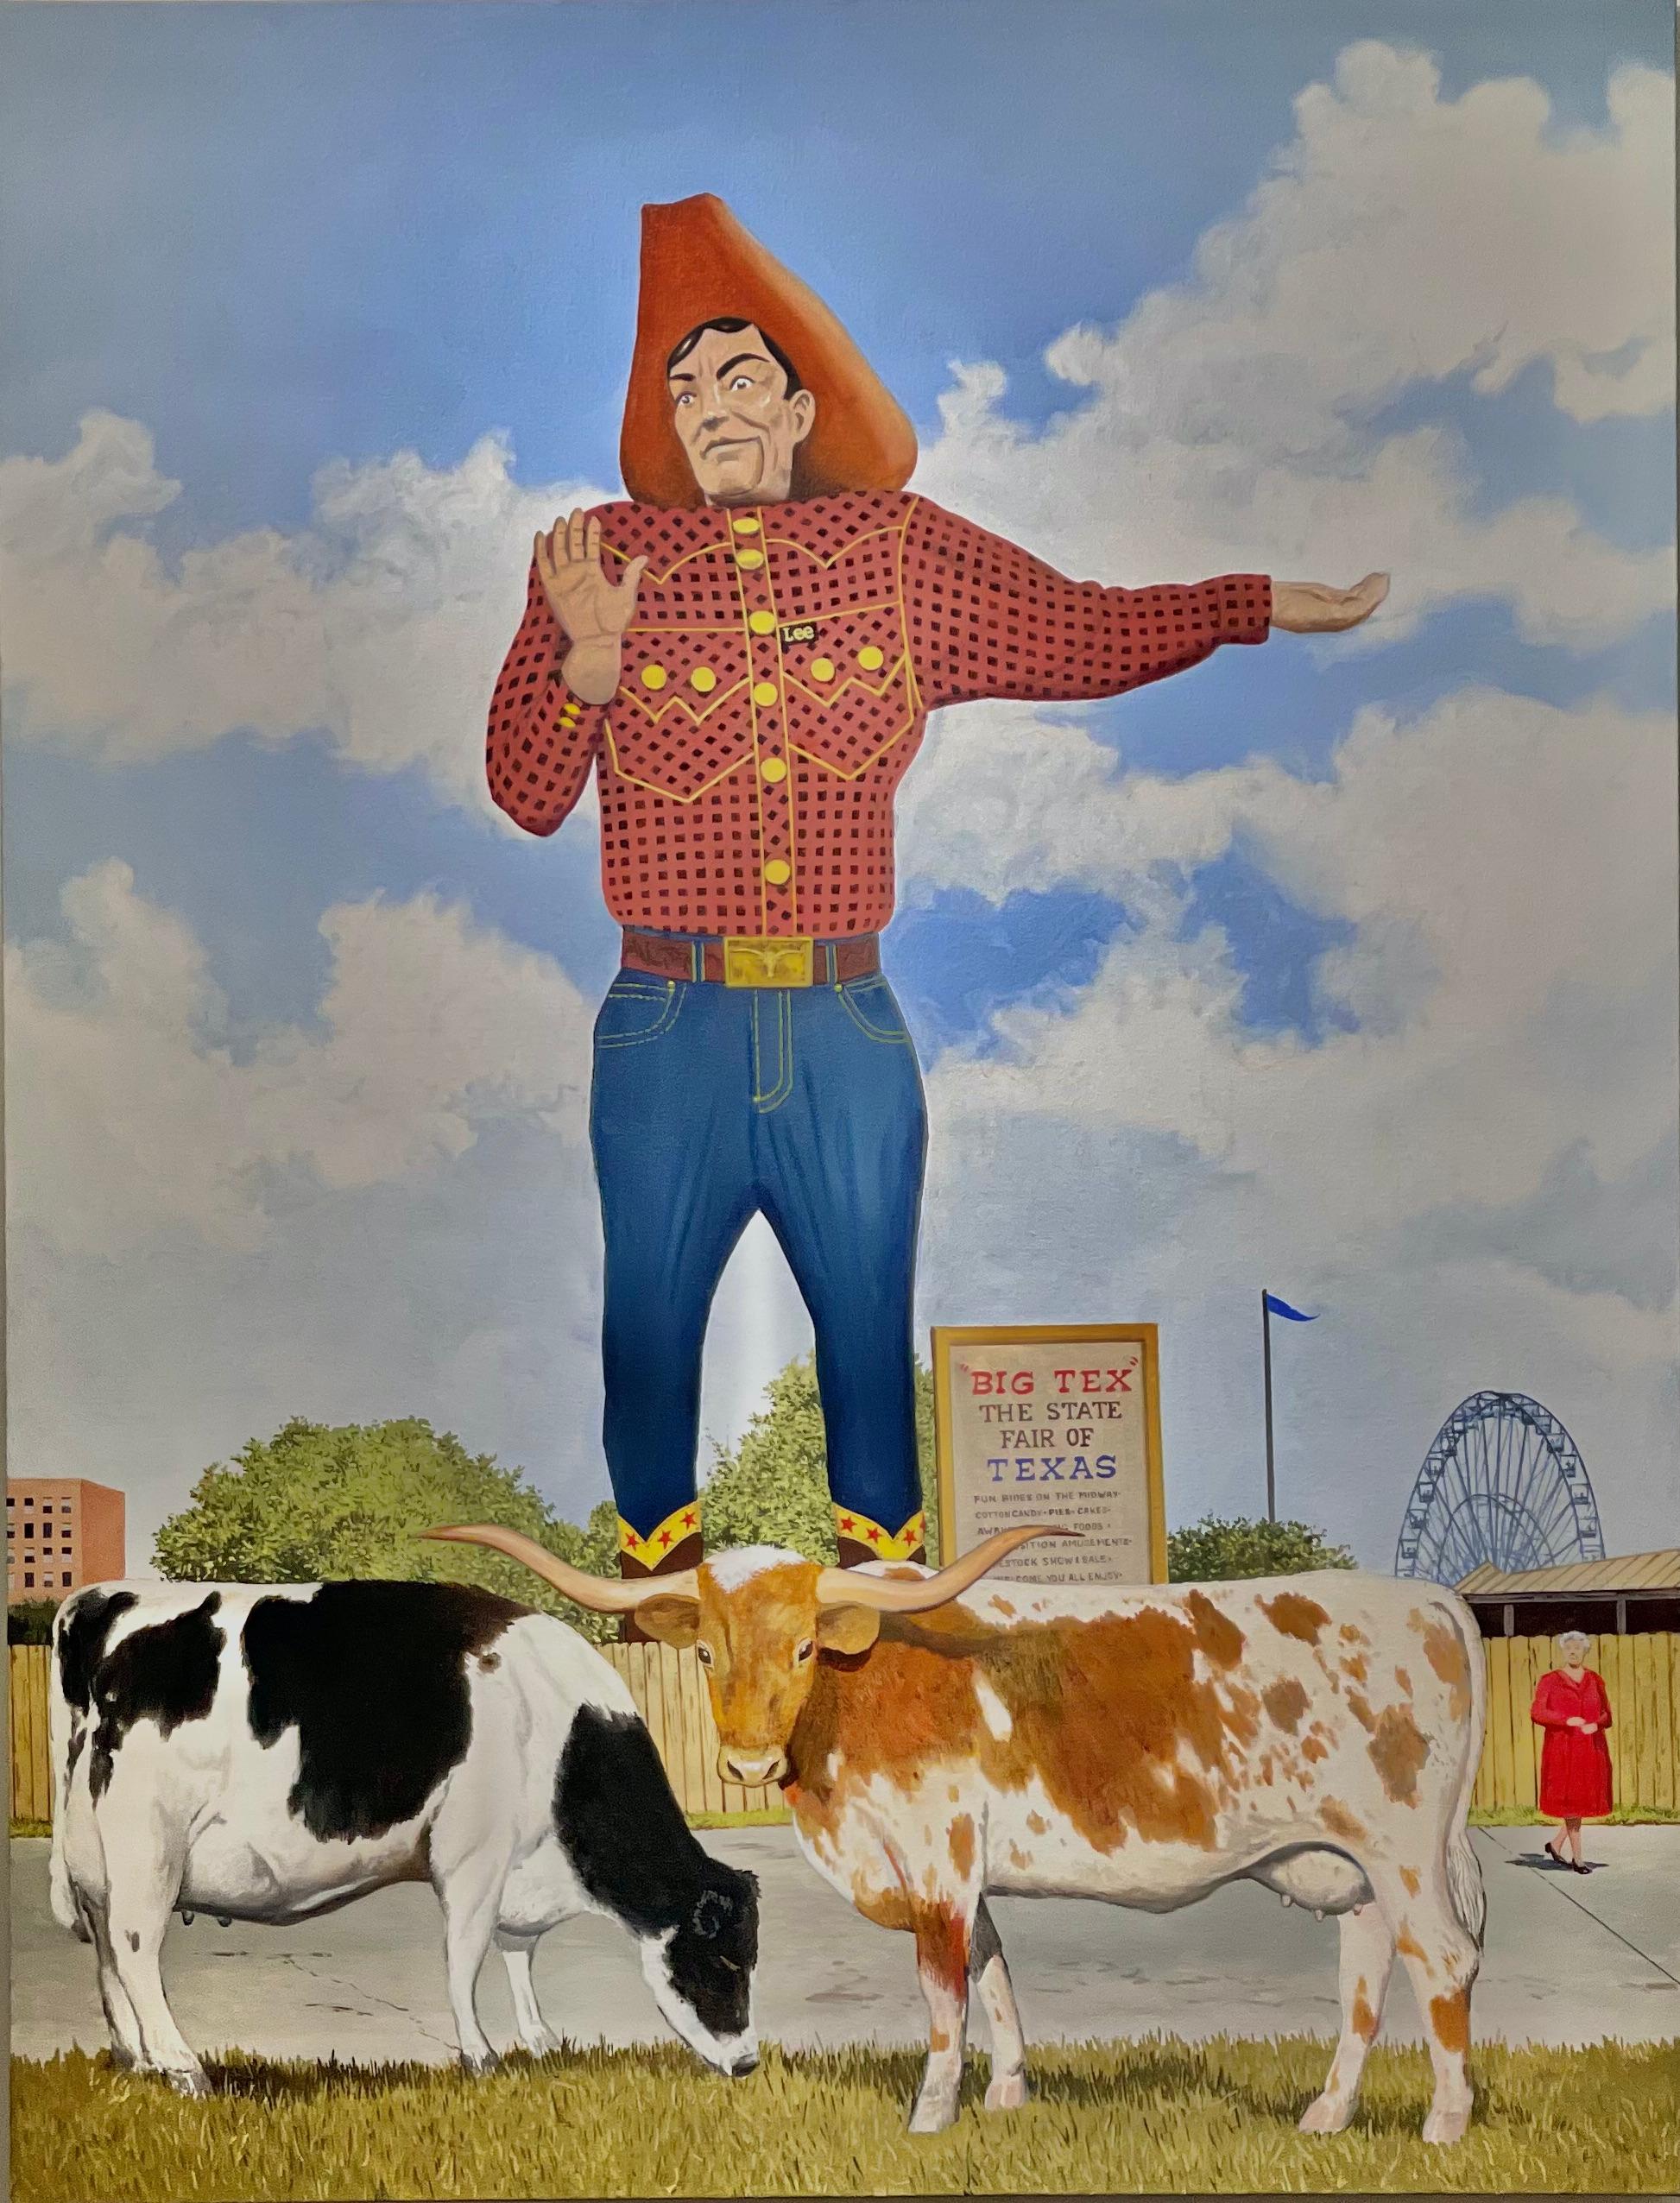 Peinture à l'huile américaine contemporaine avec le Big Tex, le cowboy et la foire d'État du Texas